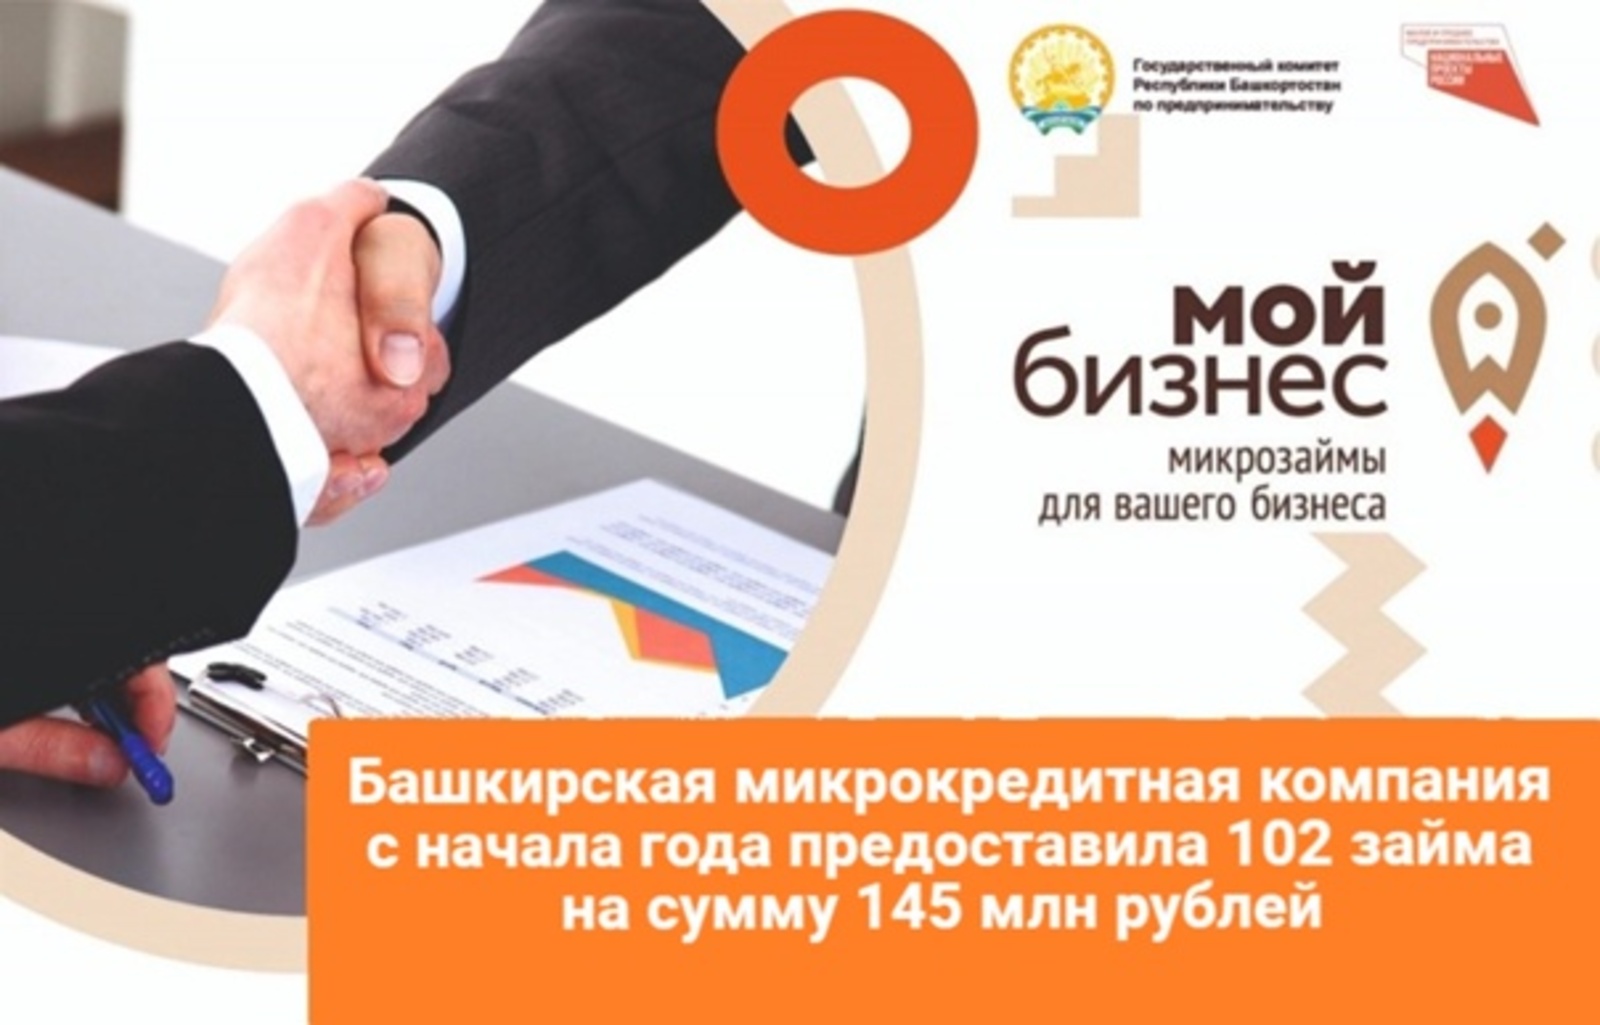 В Башкирии выдали микрокредитов предпринимателям на 145 миллионов рублей